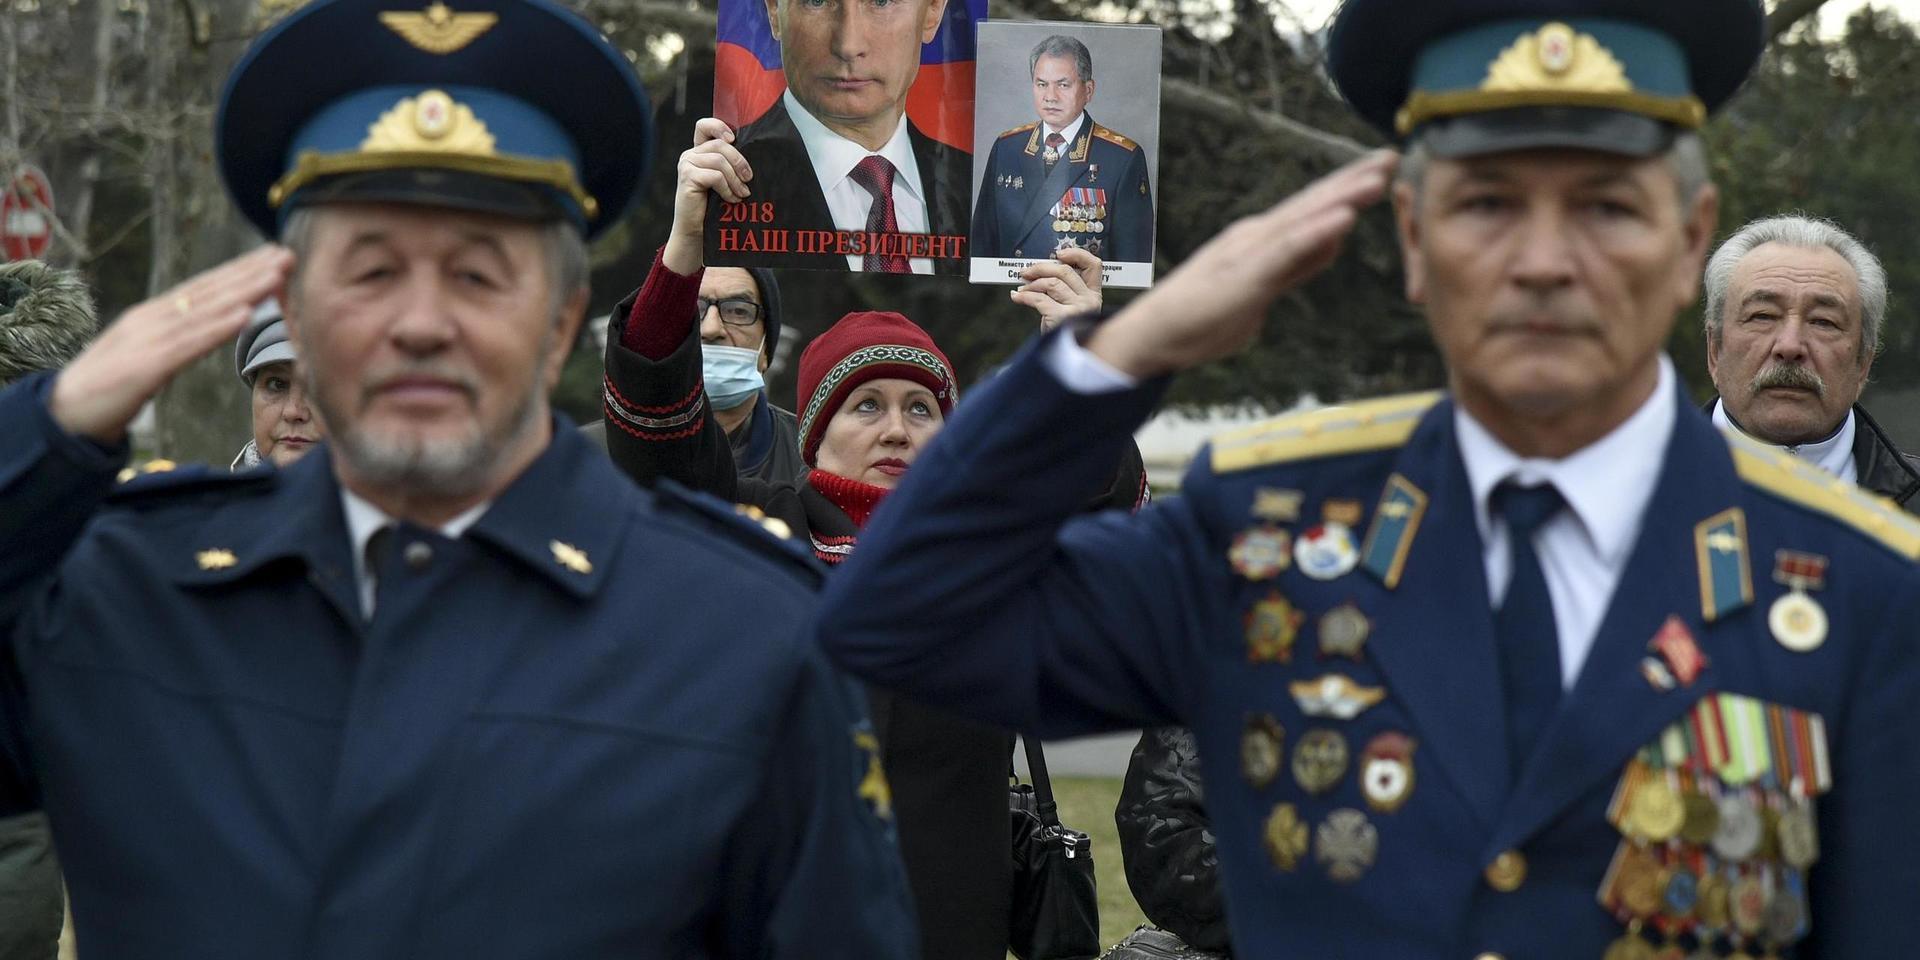 Den ryska armén hyllas i februari i år med en parad och musik i Sevastopol på ukrainska Krimhalvön.